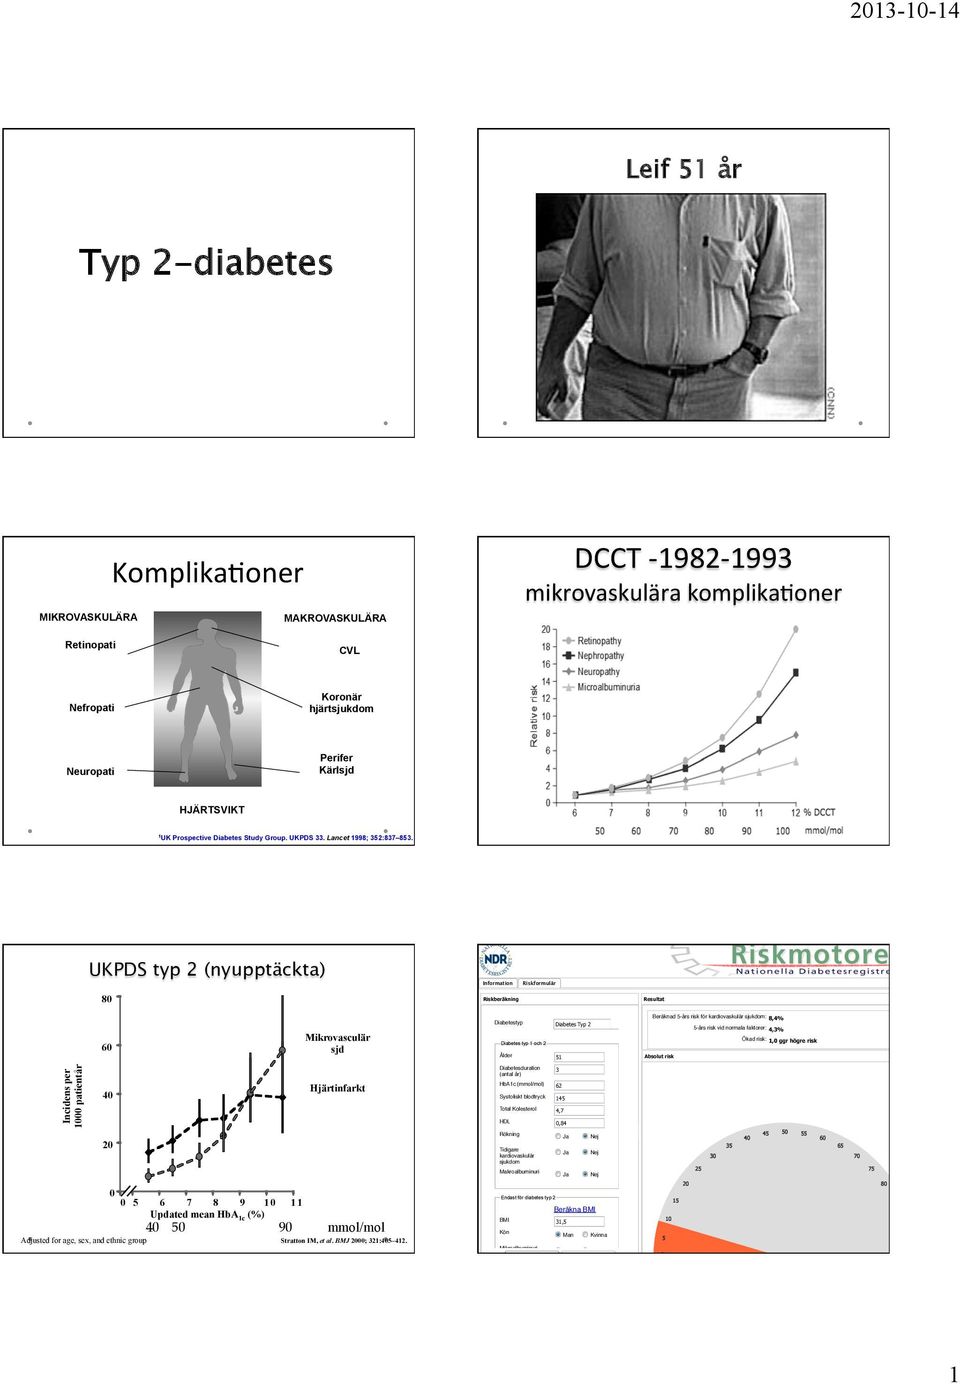 nu/risk/ UKPDS typ 2 (nyupptäckta) 80 Information Riskberäkning Riskformulär Resultat 60 Mikrovasculär sjd Diabetestyp Diabetes typ 1 och 2 Ålder Diabetes Typ 2 51 Beräknad 5-års risk för